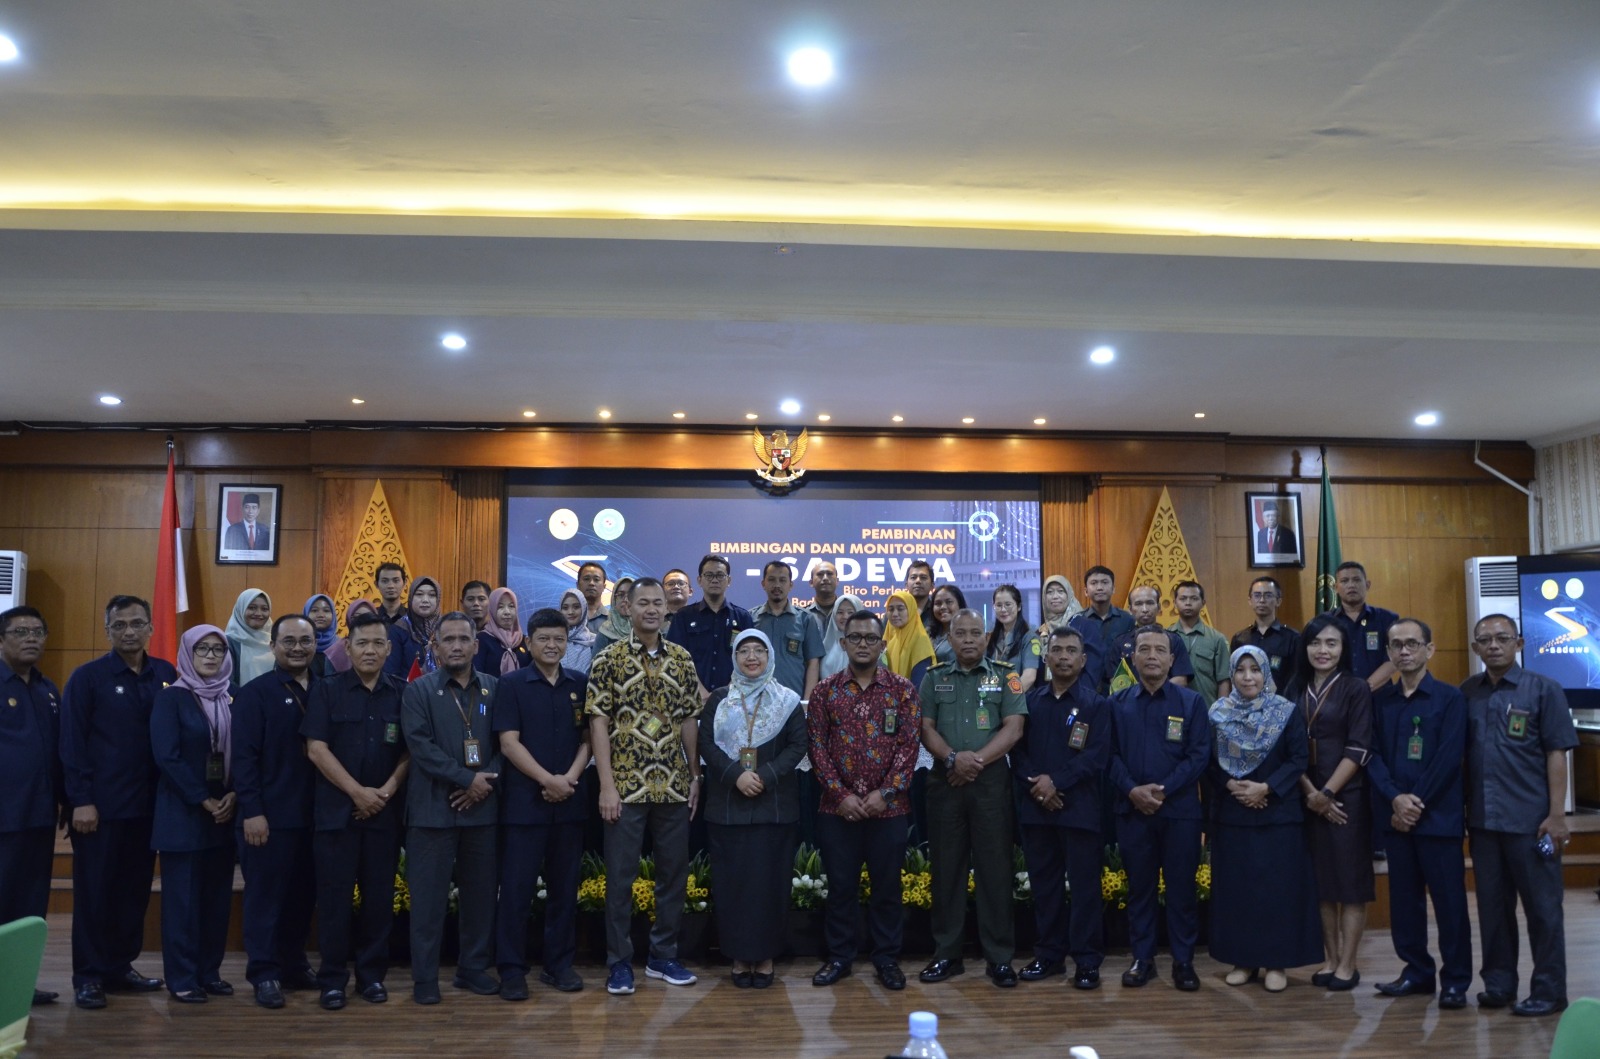 Pengadilan Negeri Yogyakarta Mengikuti Bimbingan dan Monitoring ESADEWA